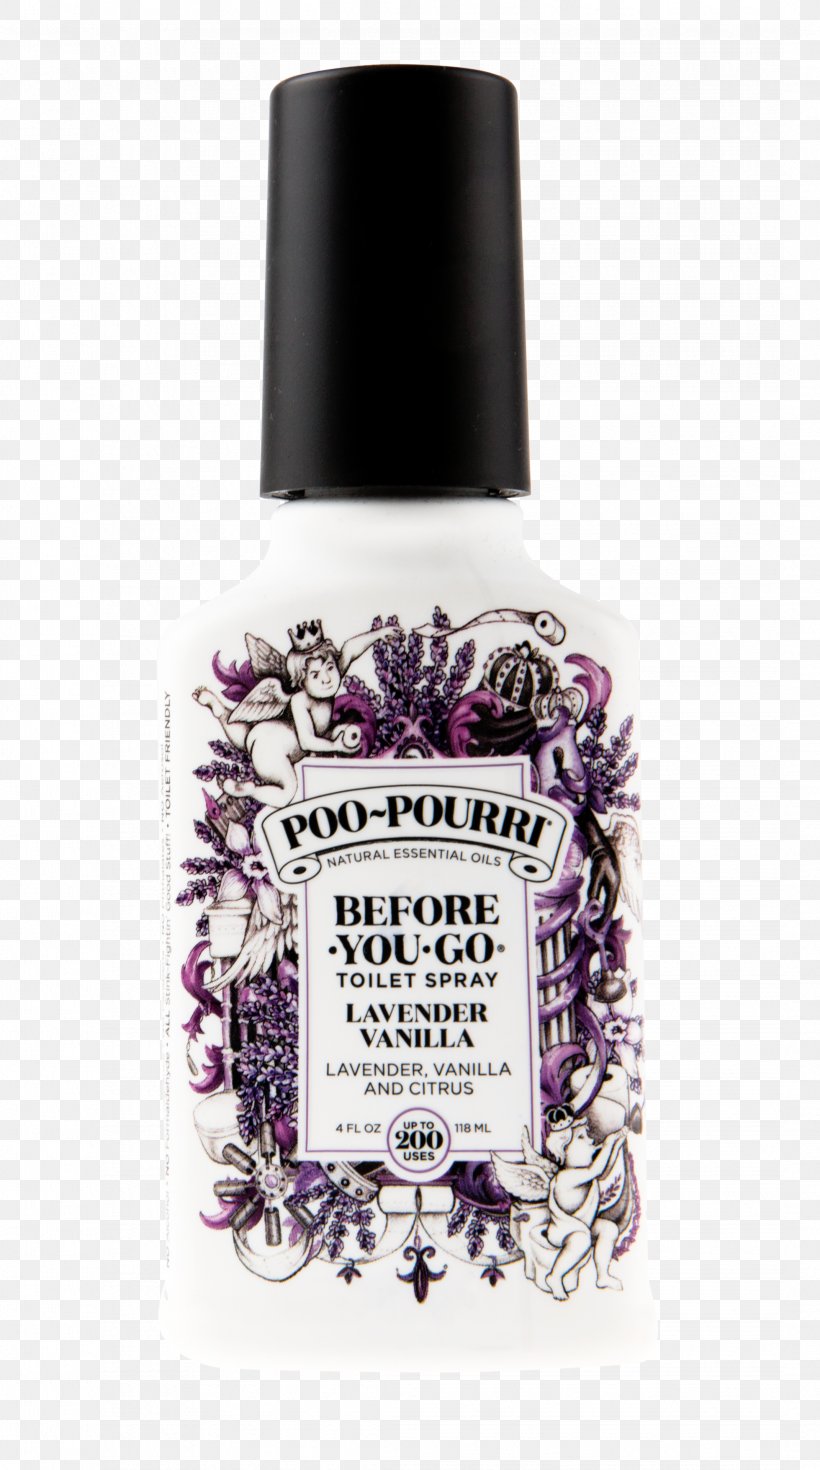 Poo-Pourri Perfume Toilet Lavender Bottle, PNG, 2141x3840px, Poopourri, Aerosol Spray, Air Fresheners, Bathroom, Bottle Download Free